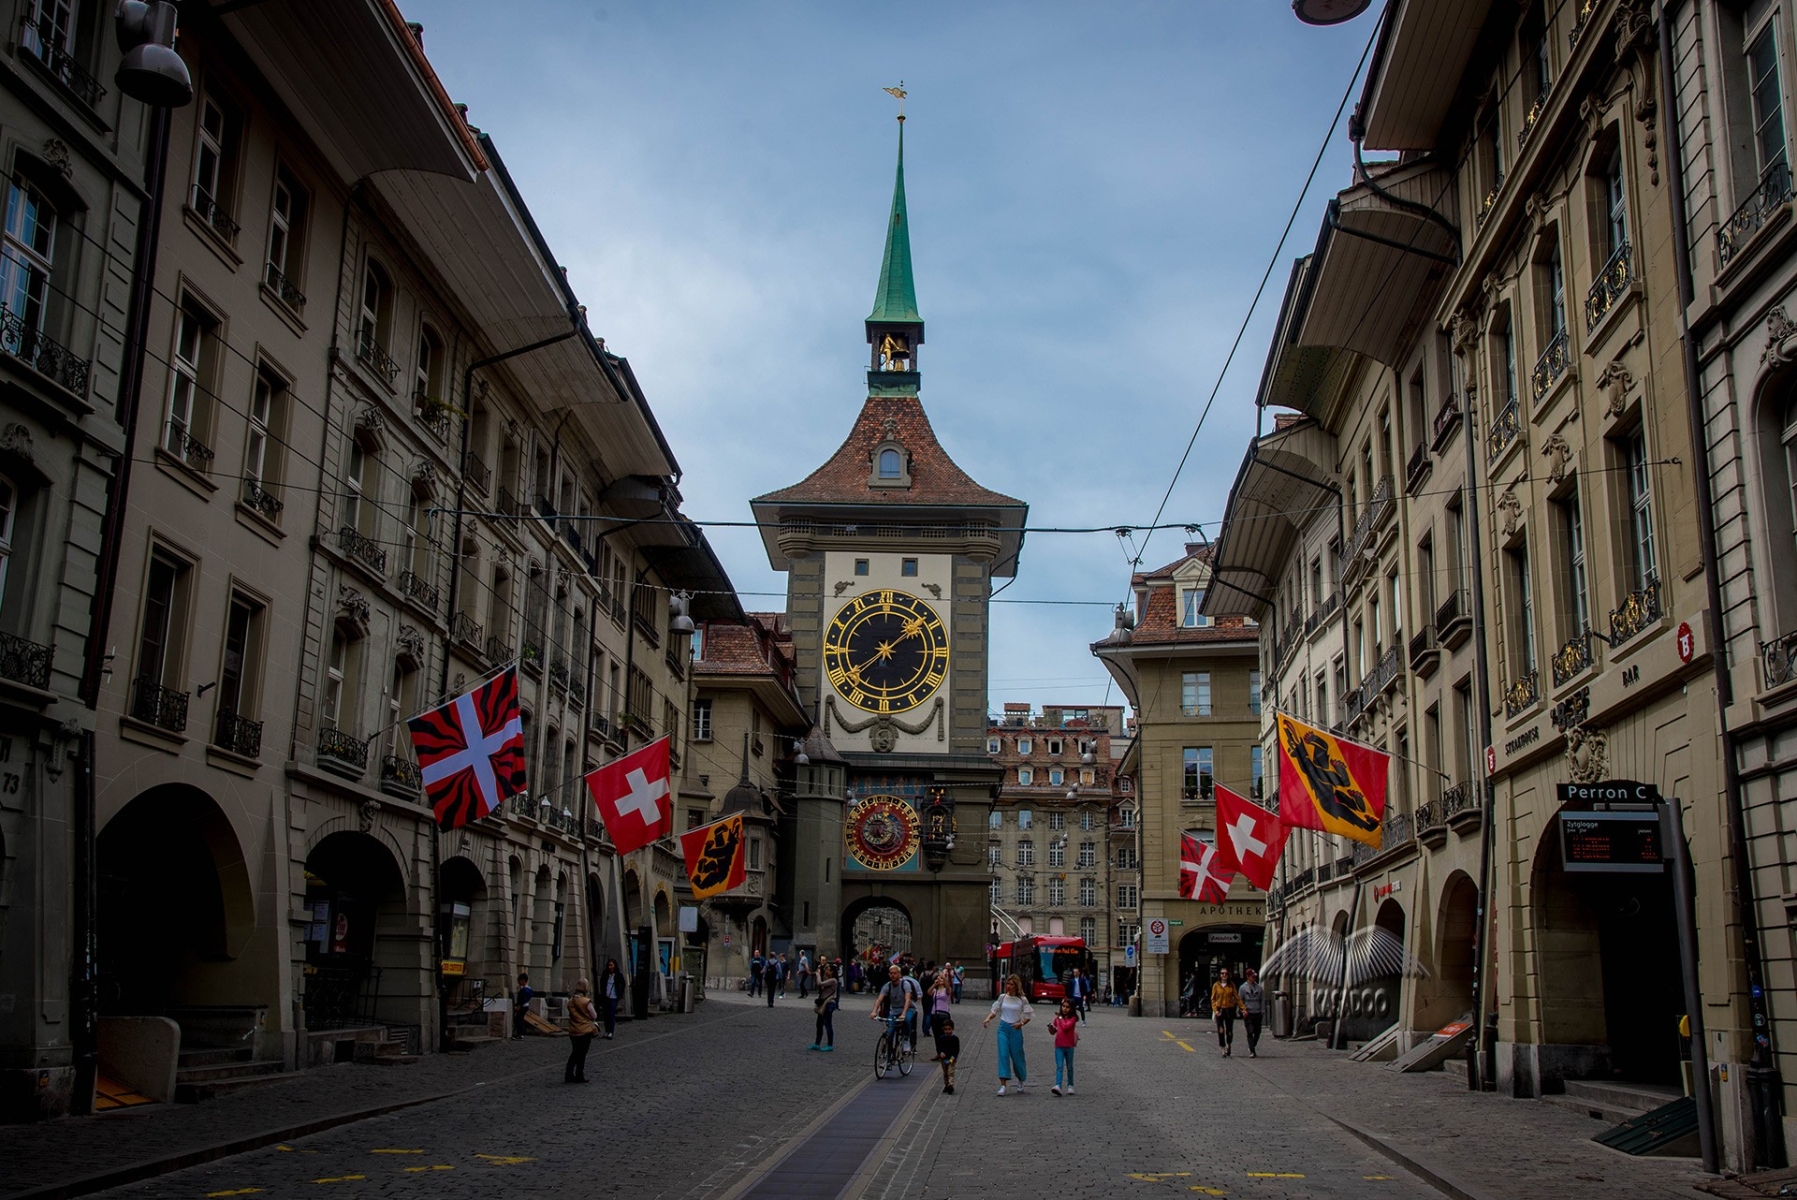 Tháp đồng hồ lịch sử ở thành phố Bern